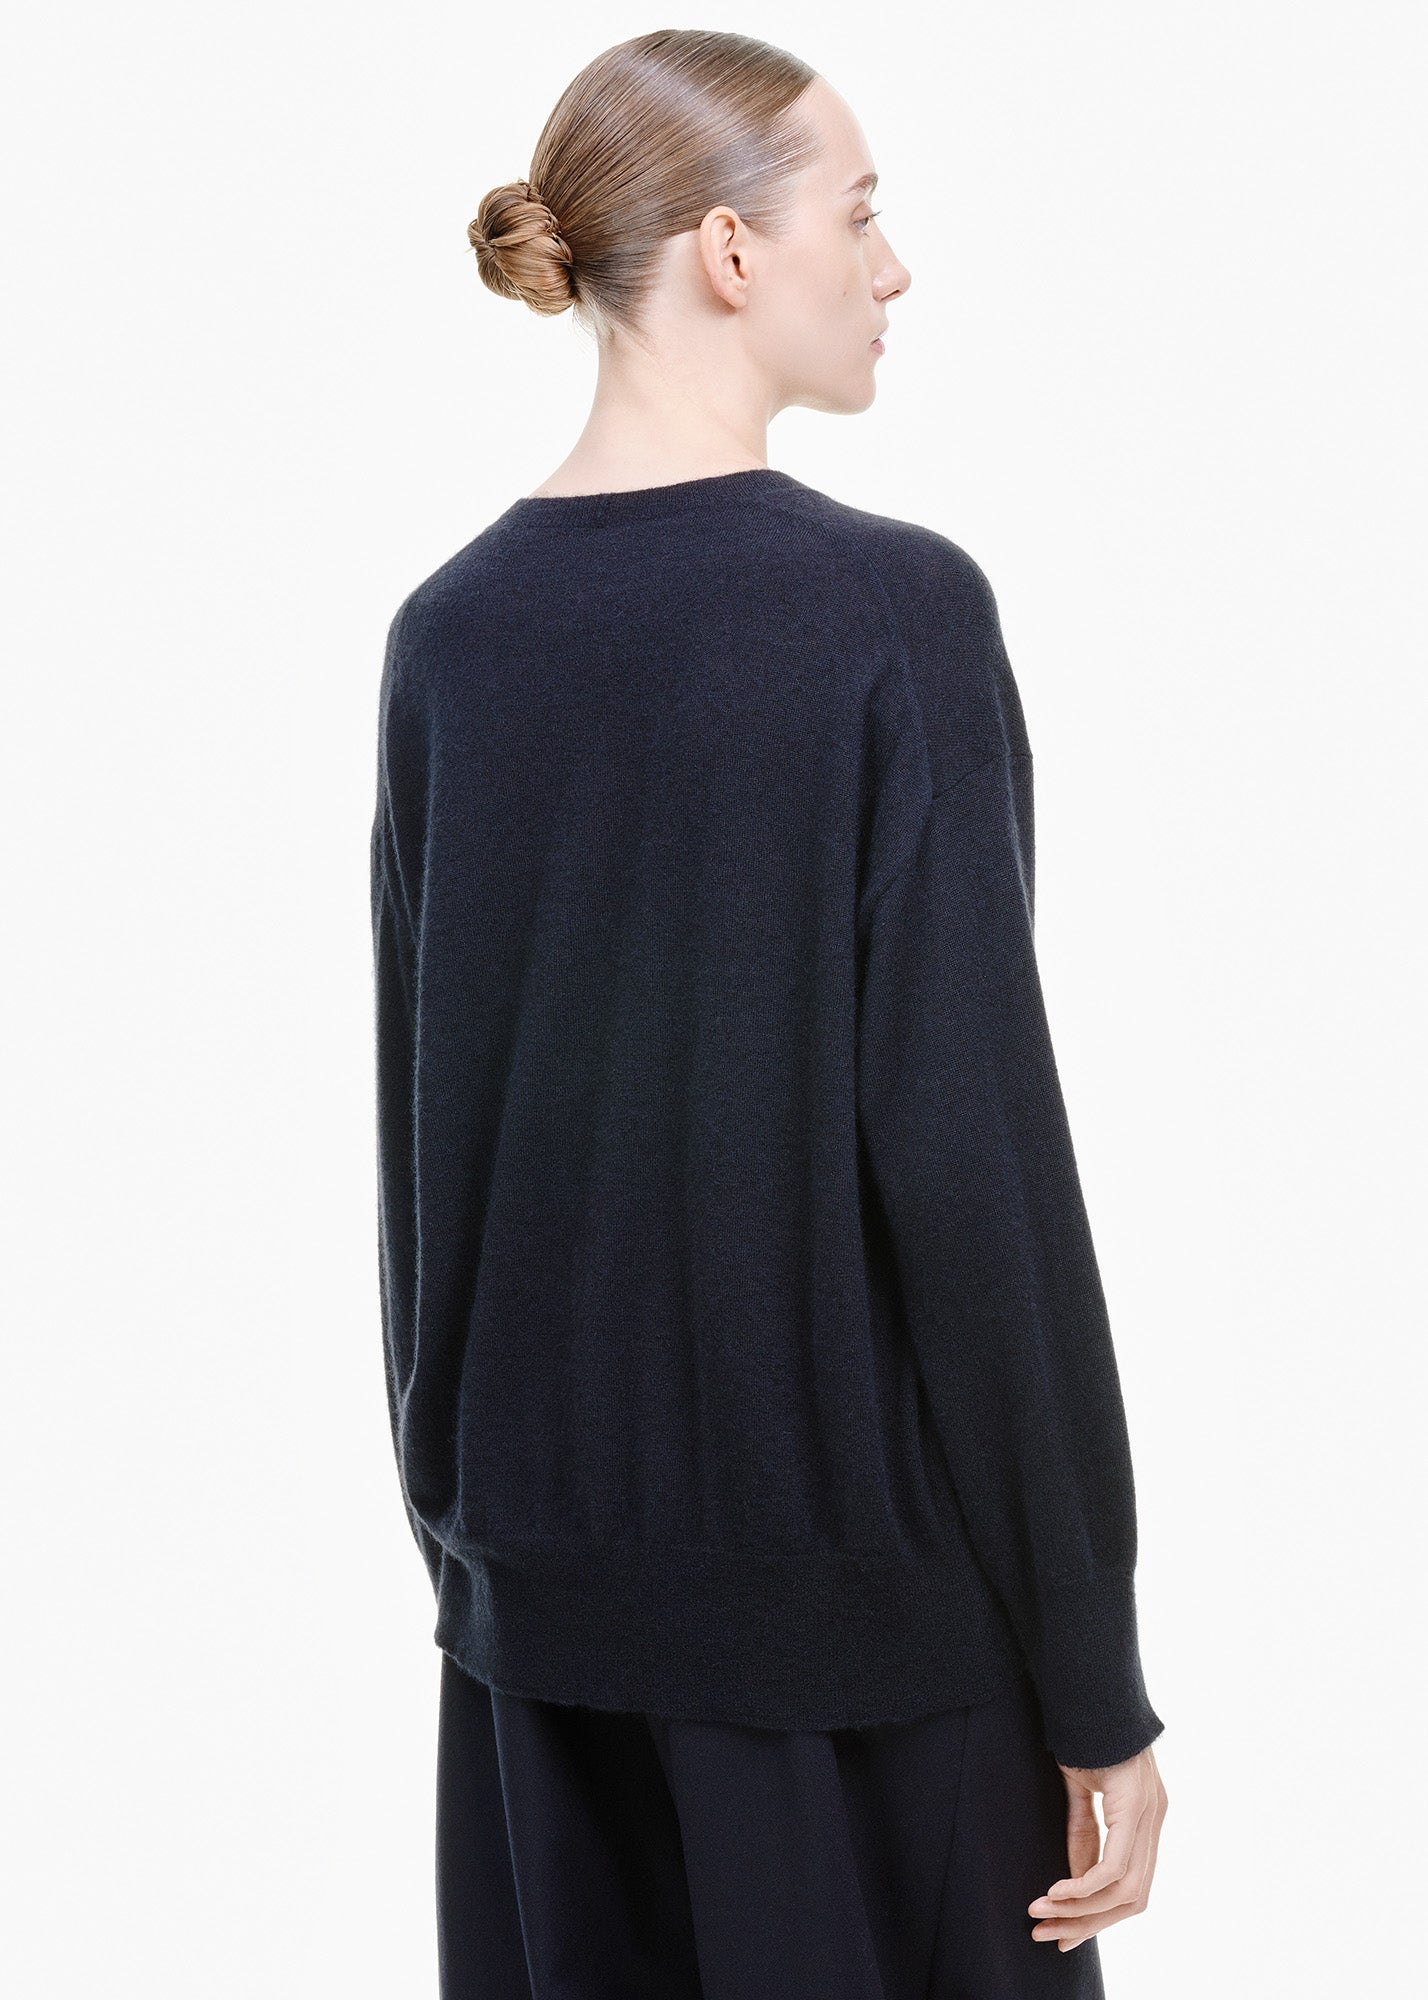 Cashmere/ Silk Round Neck Sweater Black